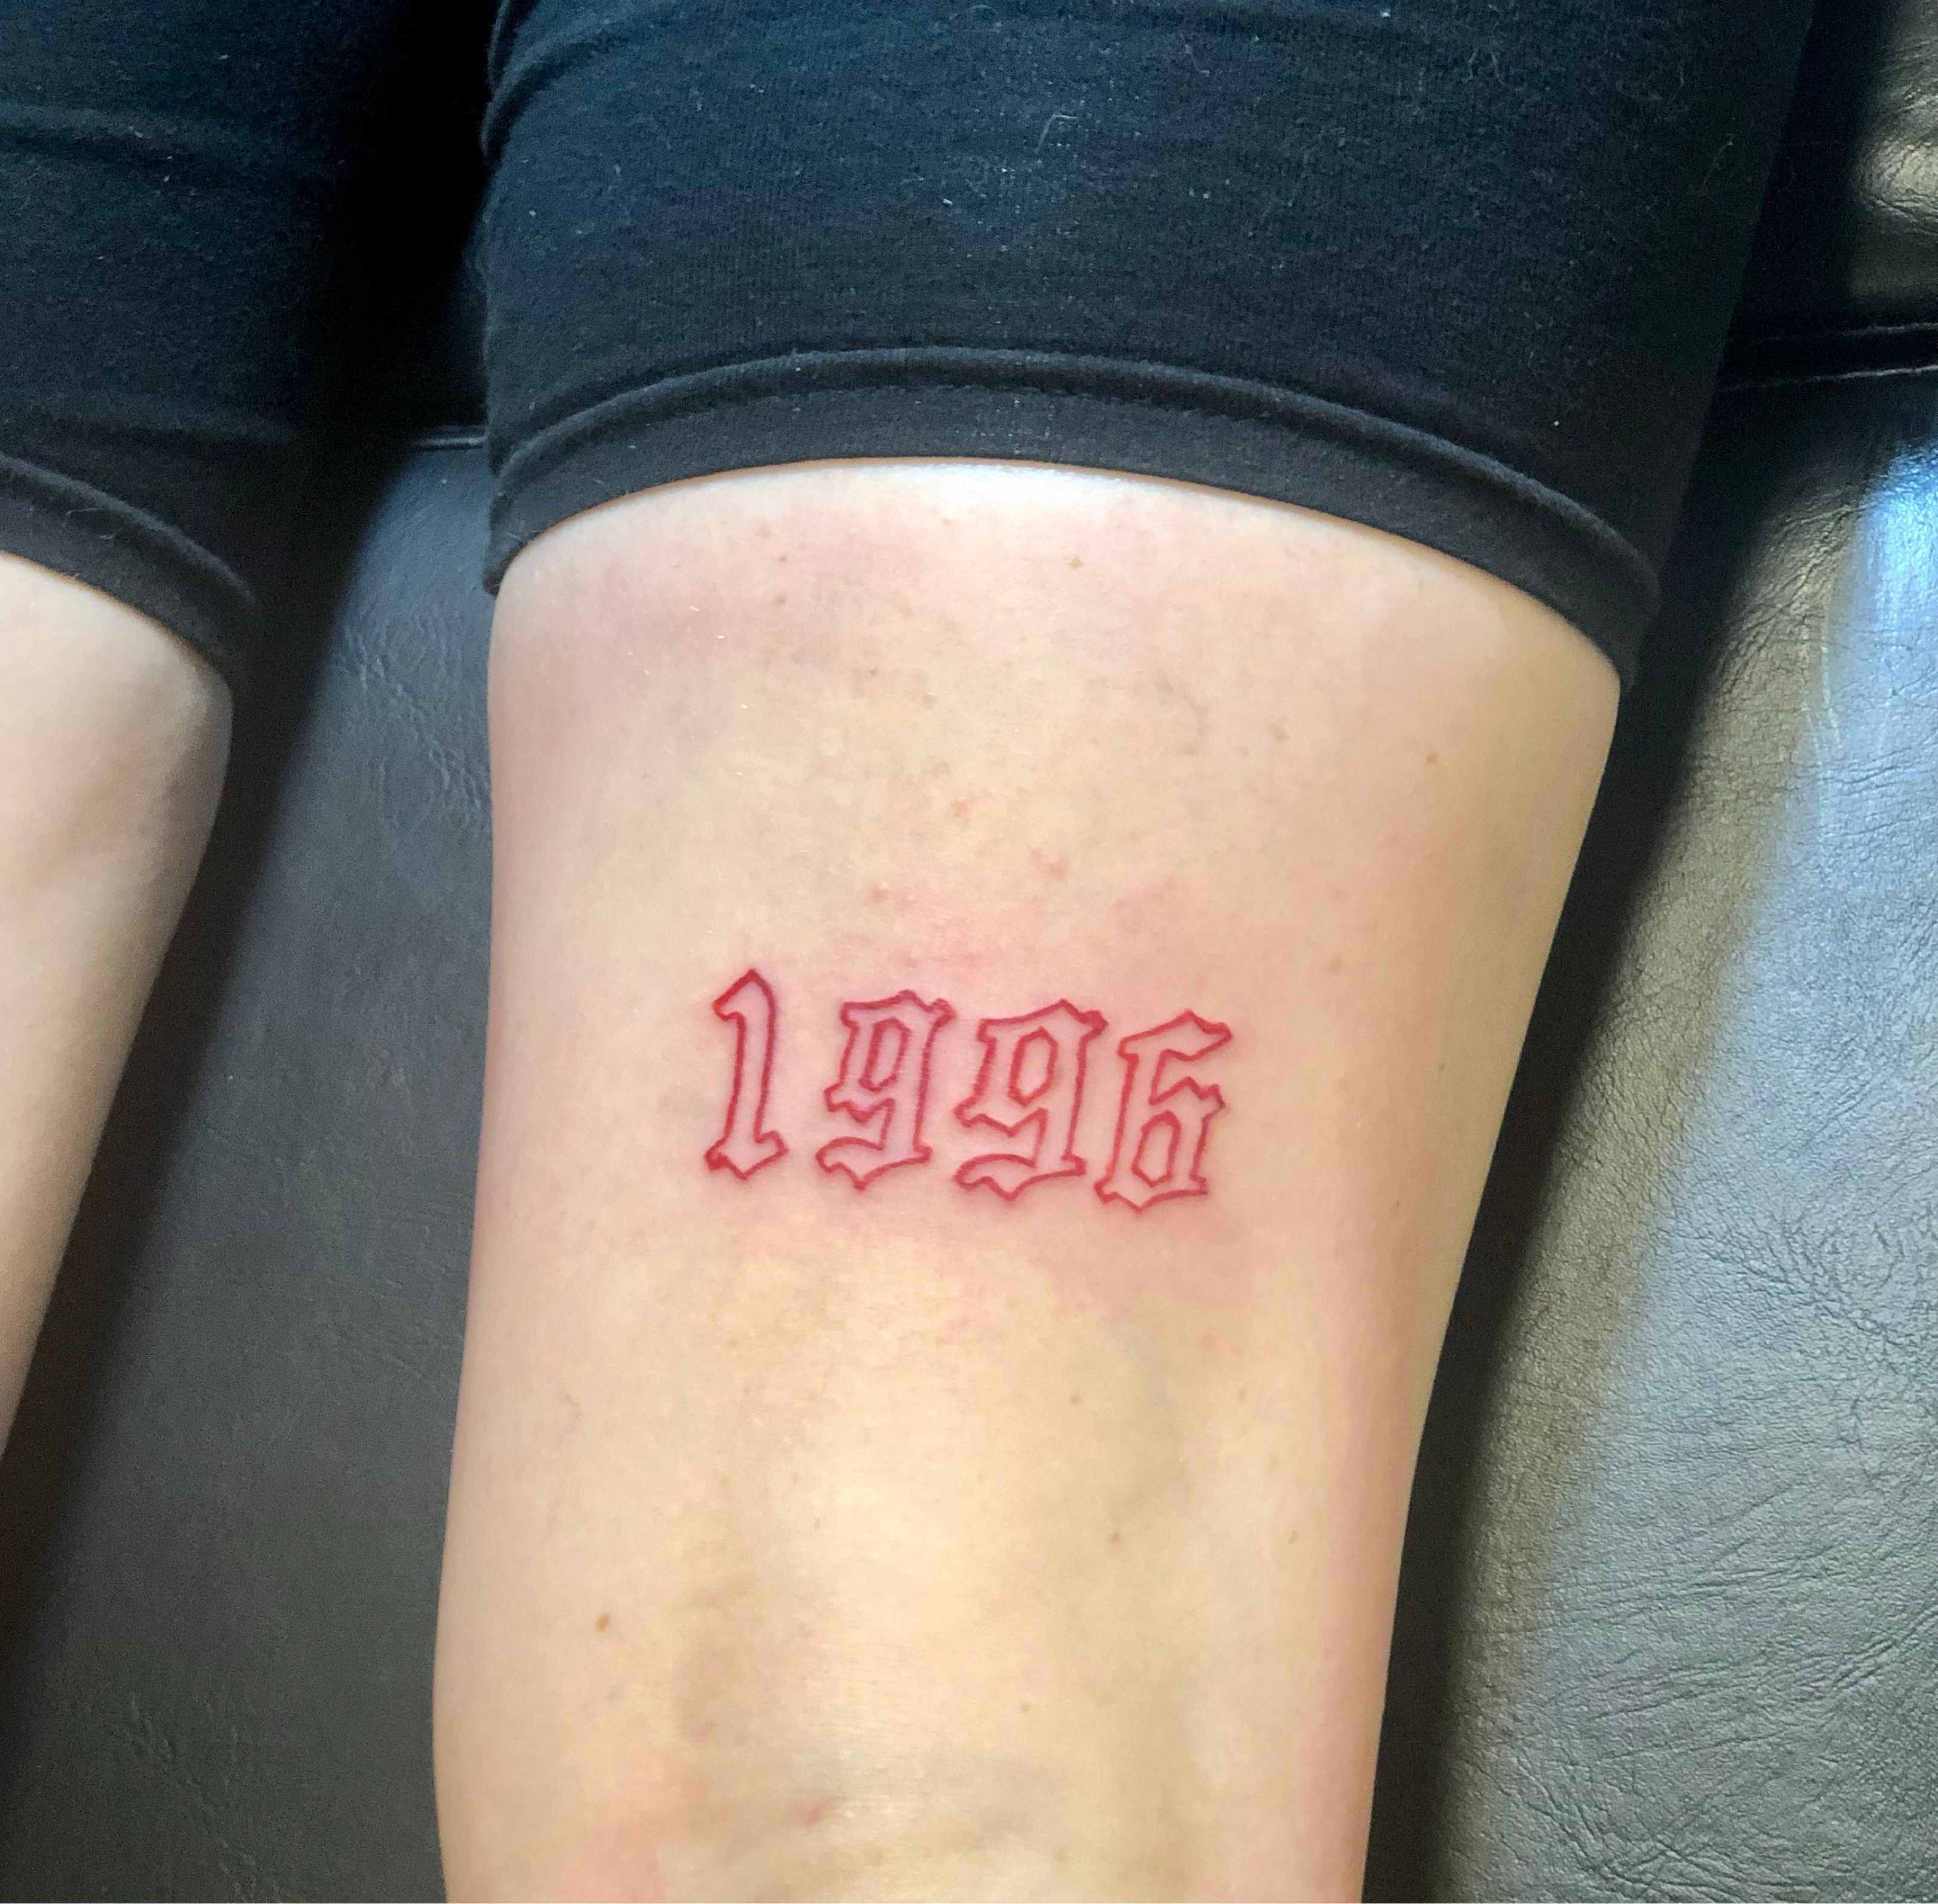 Diminki Tattoo  tattoo tattoochania legtattoo 1996 lettering  letteringtattoo numbers numberstattoo  Facebook